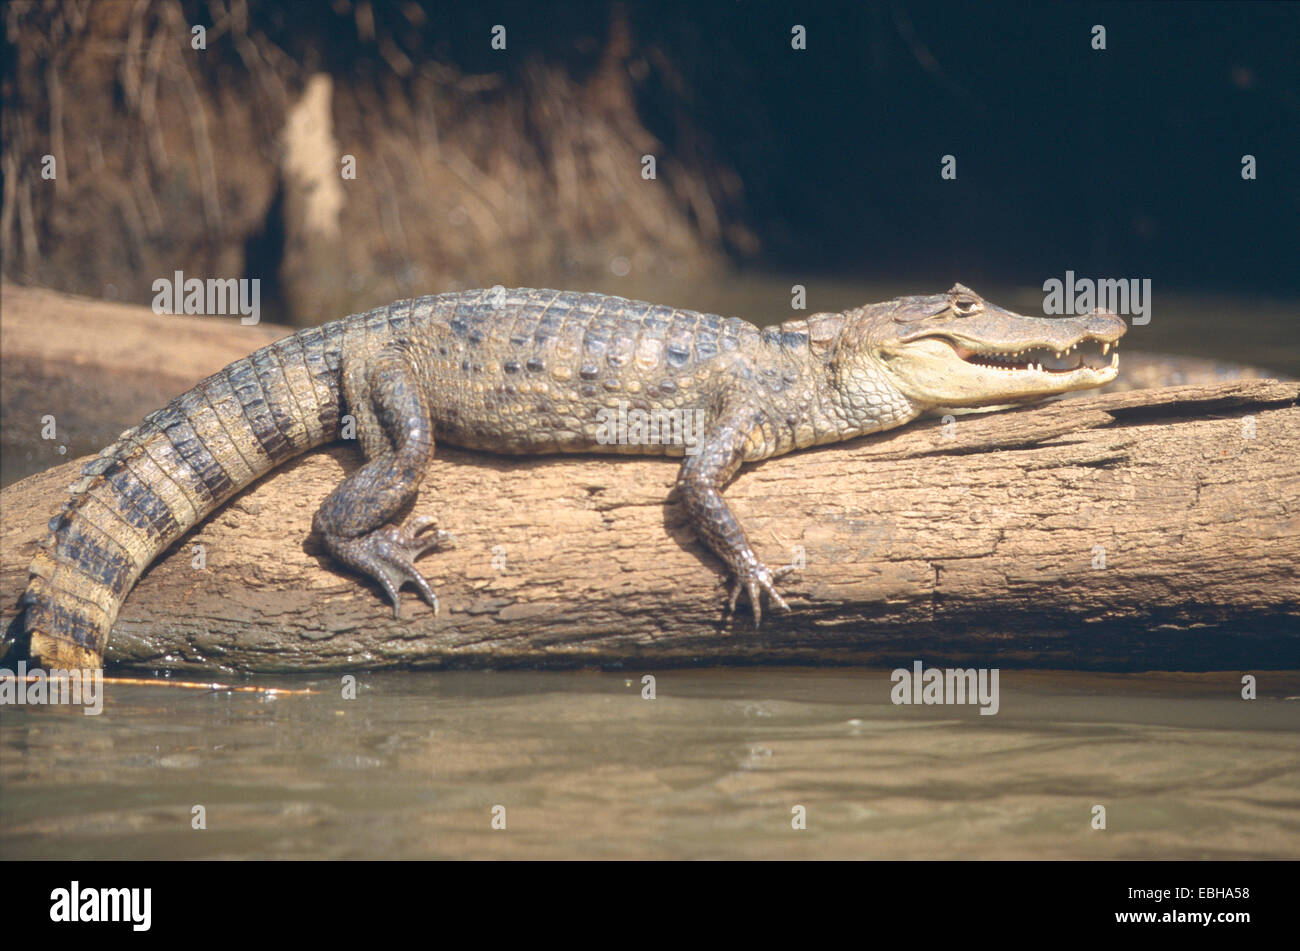 Caïman à lunettes (Caiman crocodilus), est situé sur le tronc dans l'eau. Banque D'Images